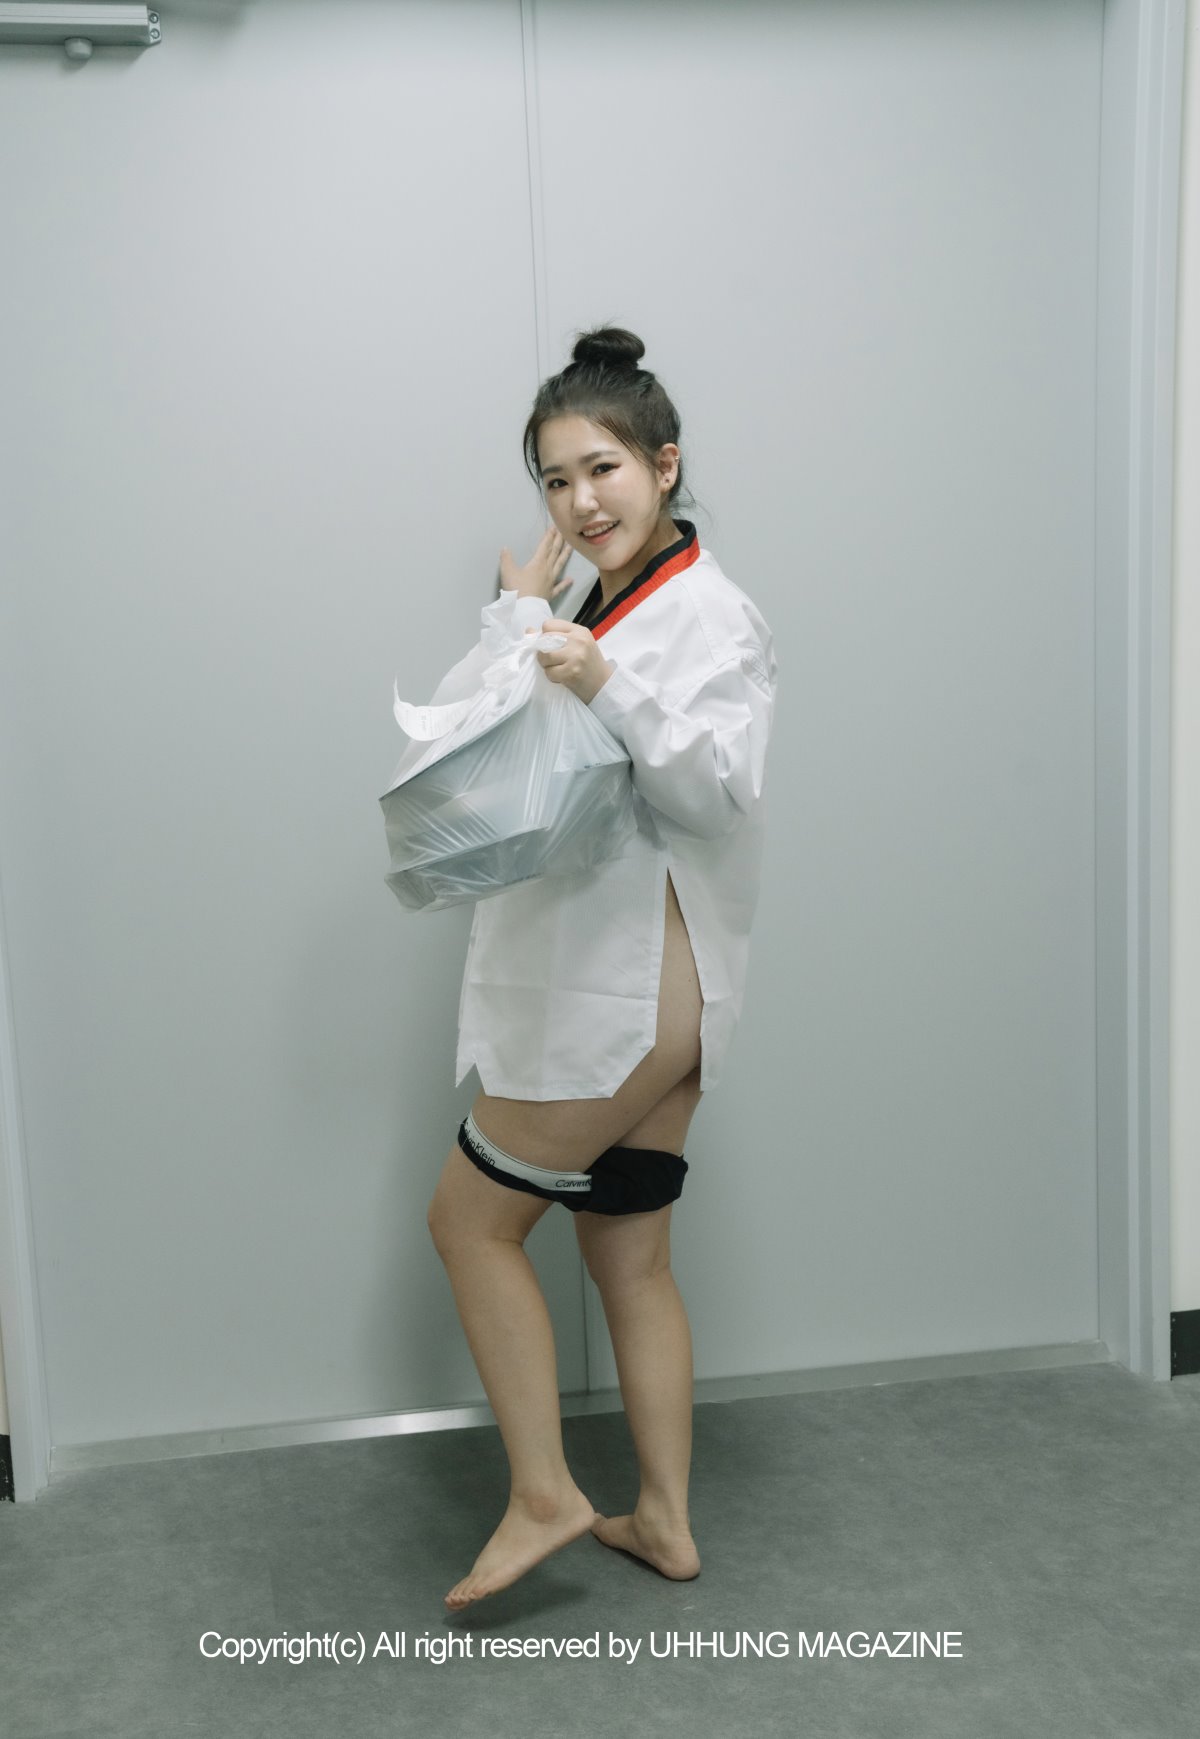 UHHUNG MAGAZINE Jenn Vol 1 Taekwondo Part2 0001 8767782136.jpg